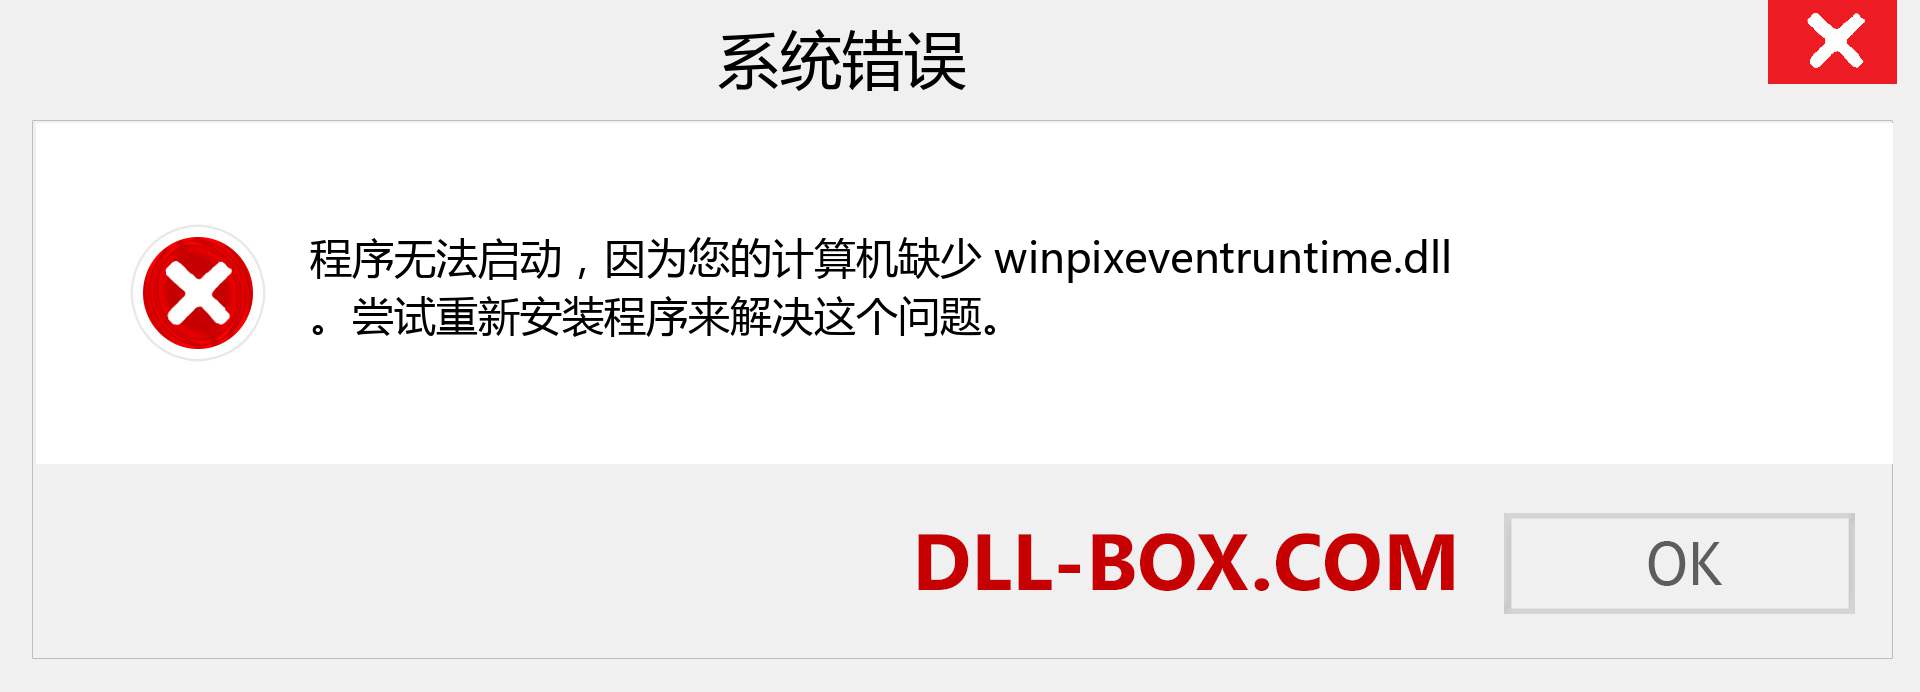 winpixeventruntime.dll 文件丢失？。 适用于 Windows 7、8、10 的下载 - 修复 Windows、照片、图像上的 winpixeventruntime dll 丢失错误